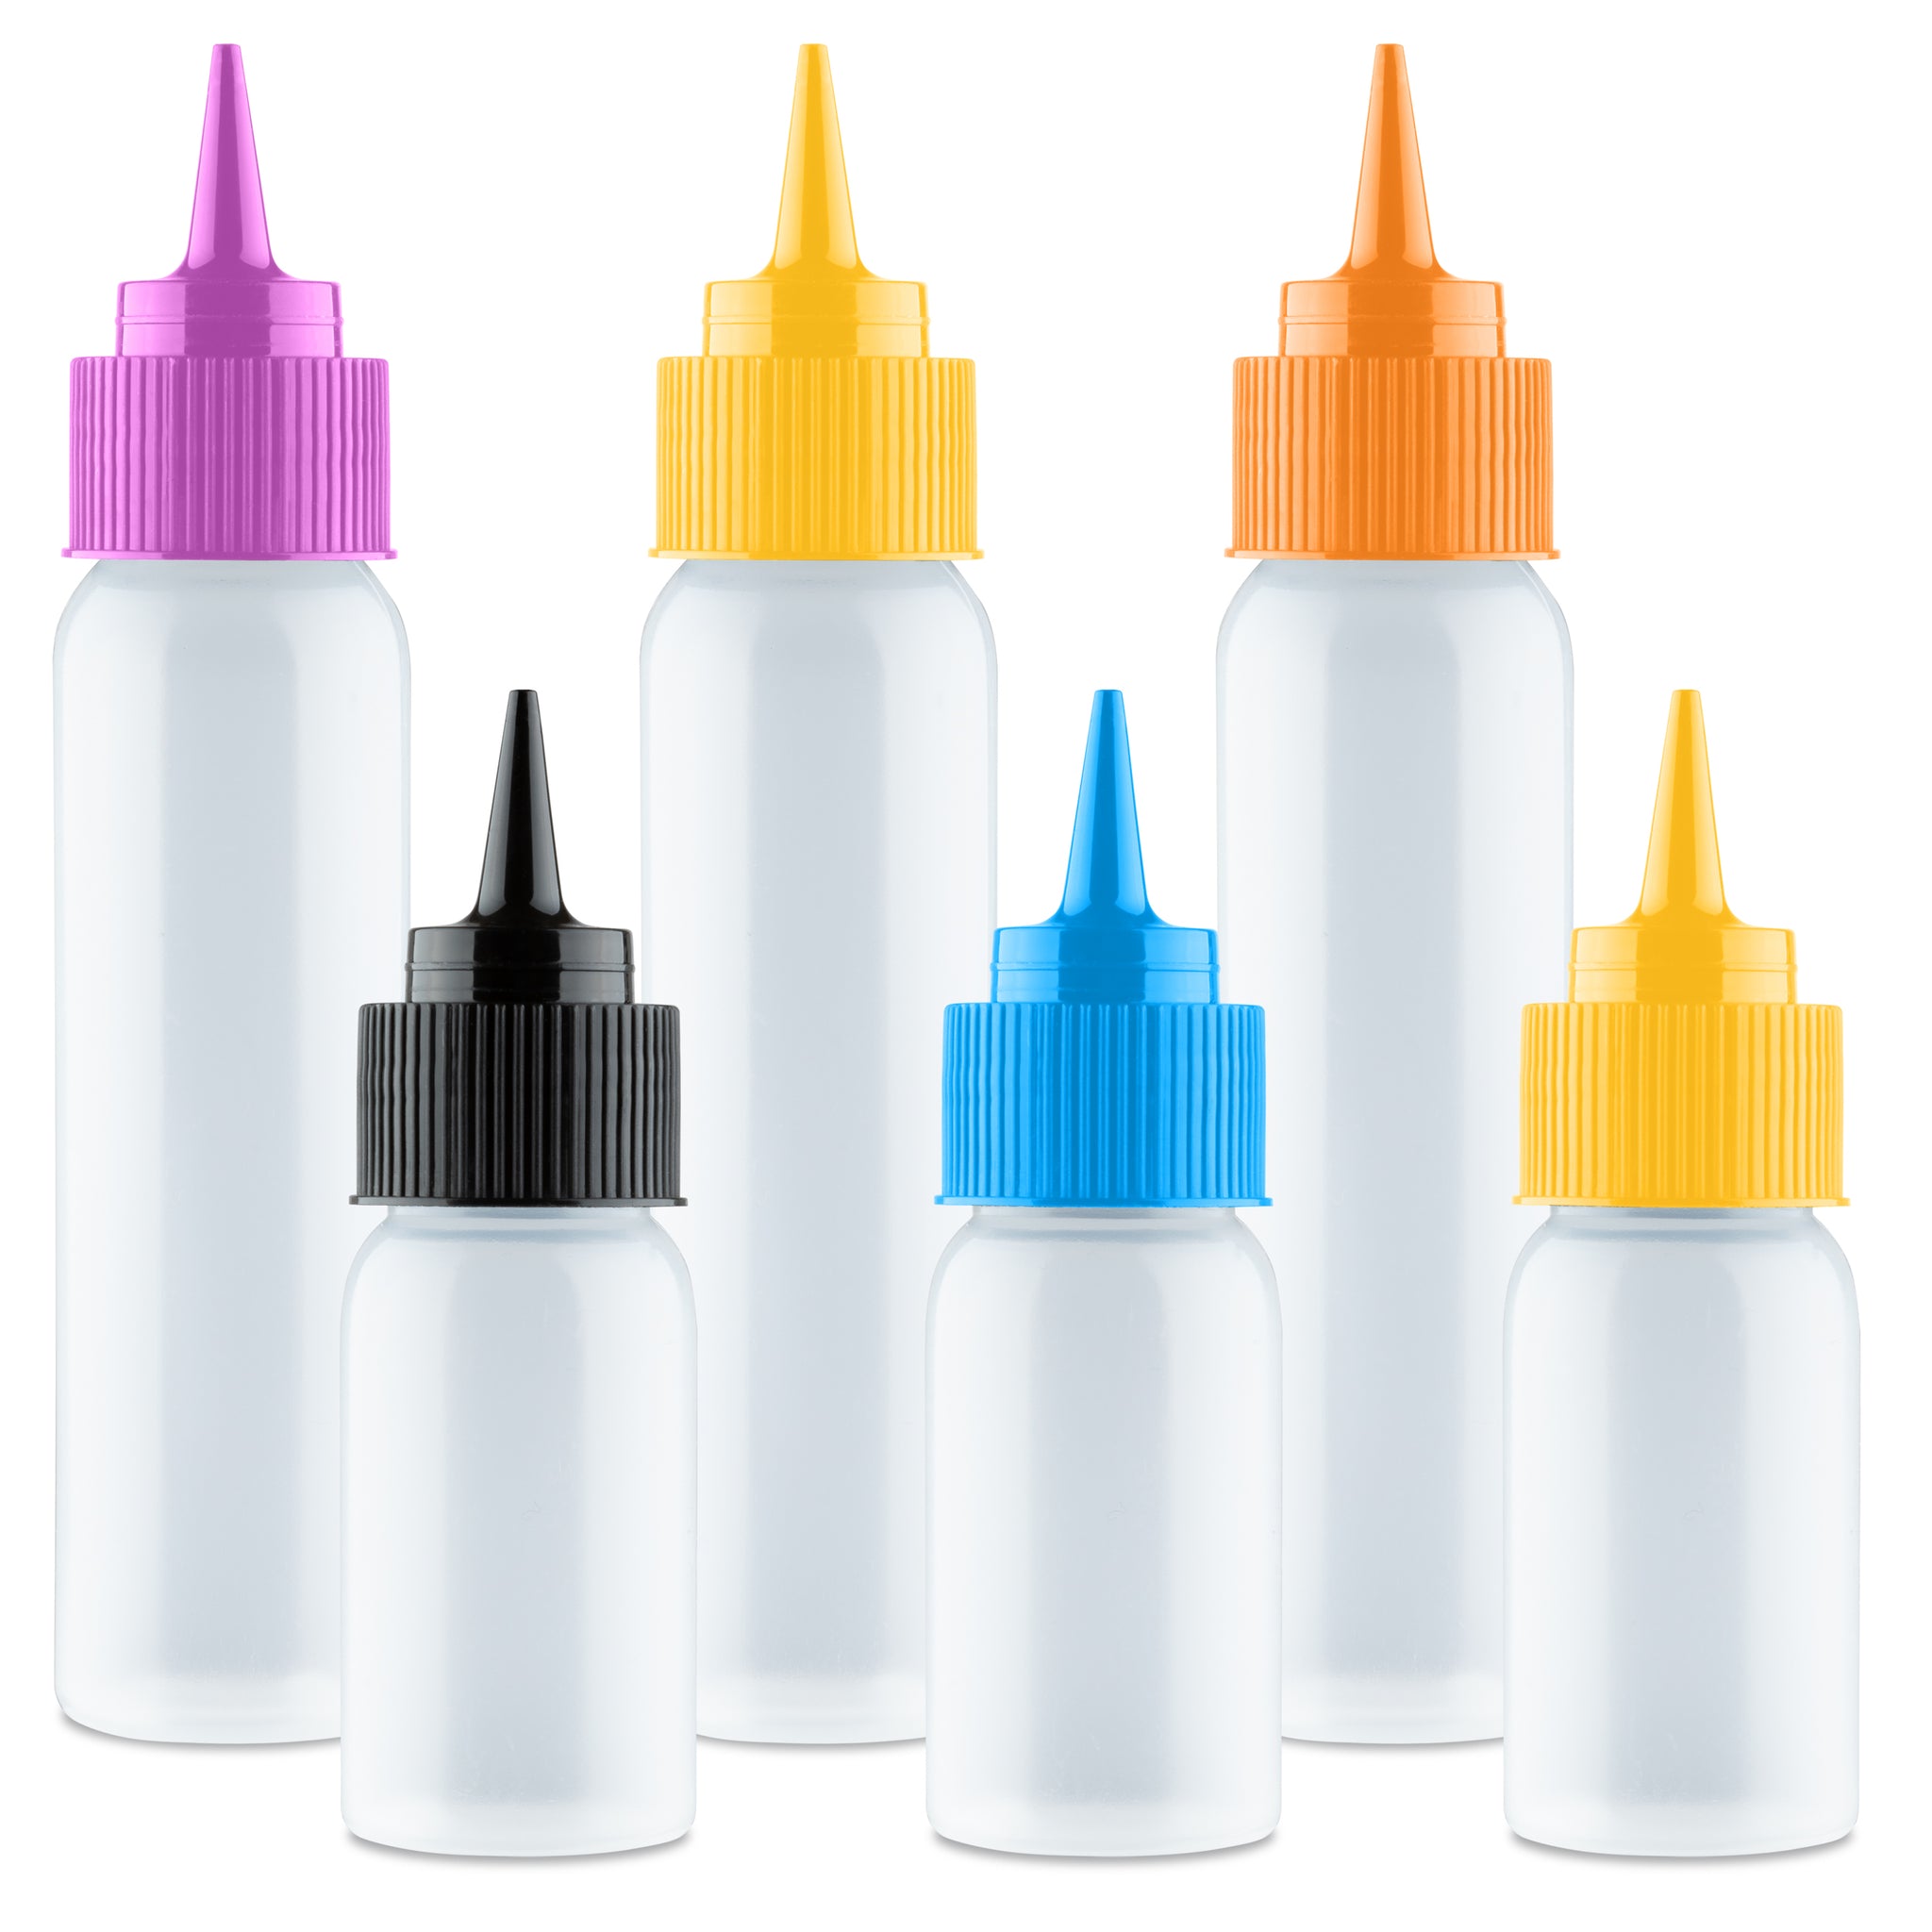 kingrol Kingrol 20-Pack Easy Squeeze Writer Bottles, 4 Ounces Soft  Applicator Bottle for Paint, Glue, Glaze, DIY Craft, Art